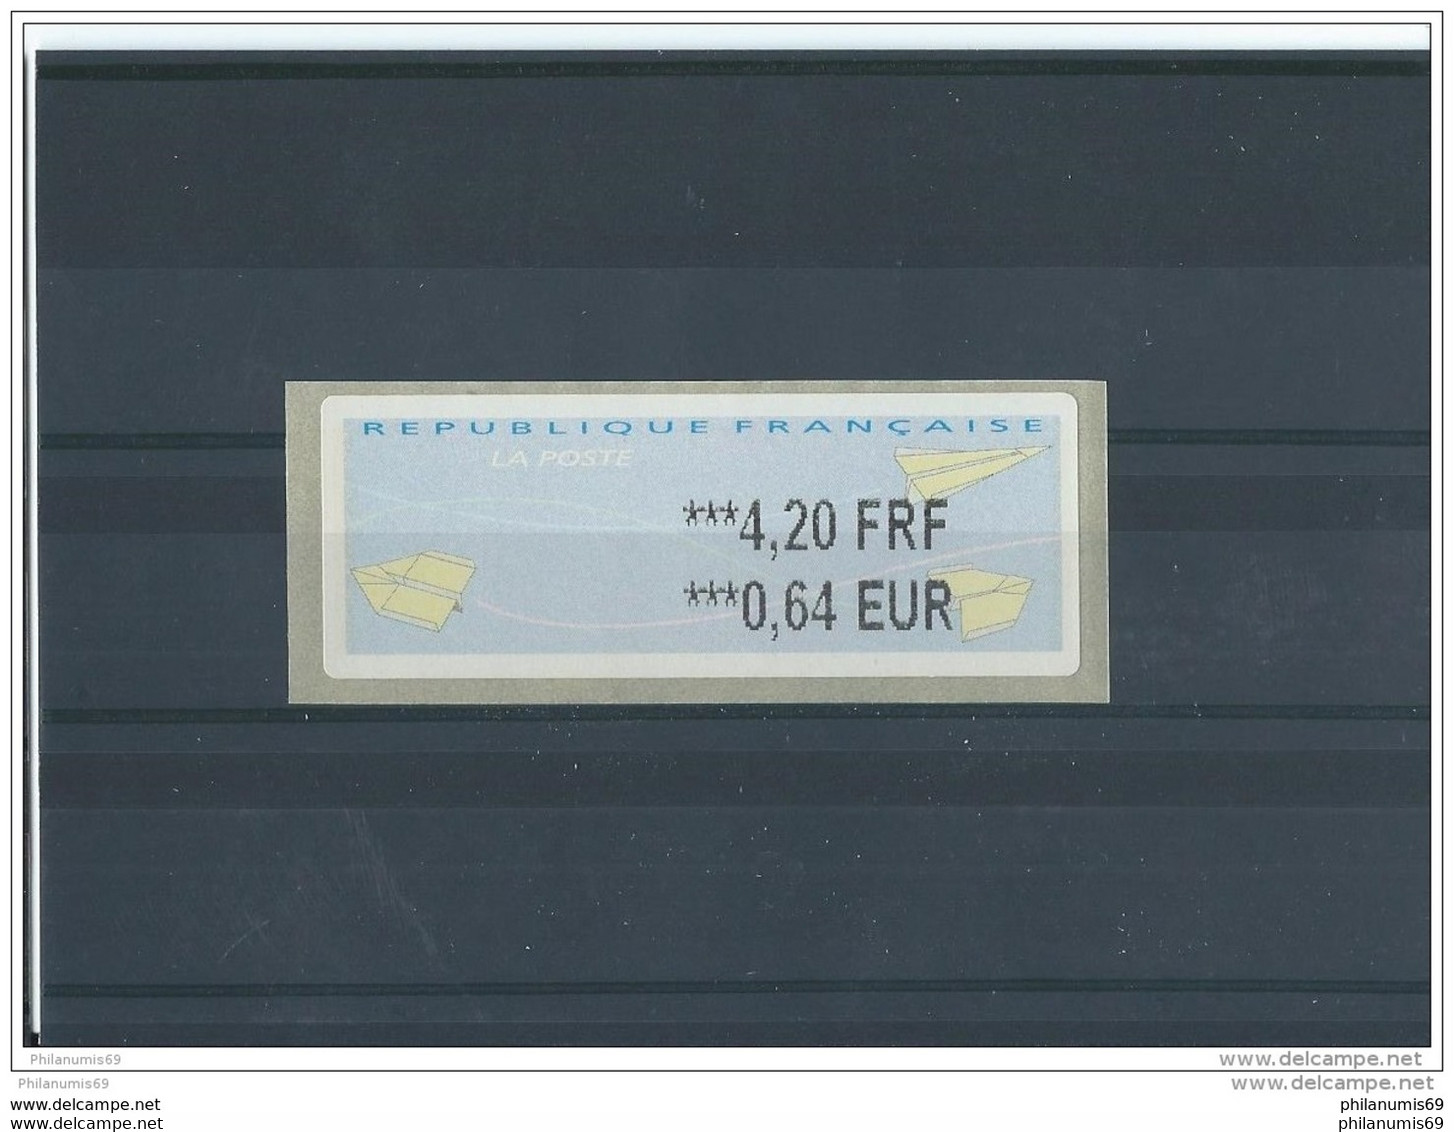 FRANCE - 2000 VIGNETTE 4,20 FRF/0,64 EUR - IMPRESSION EN NOIR ** LUXE - 2000 Type « Avions En Papier »